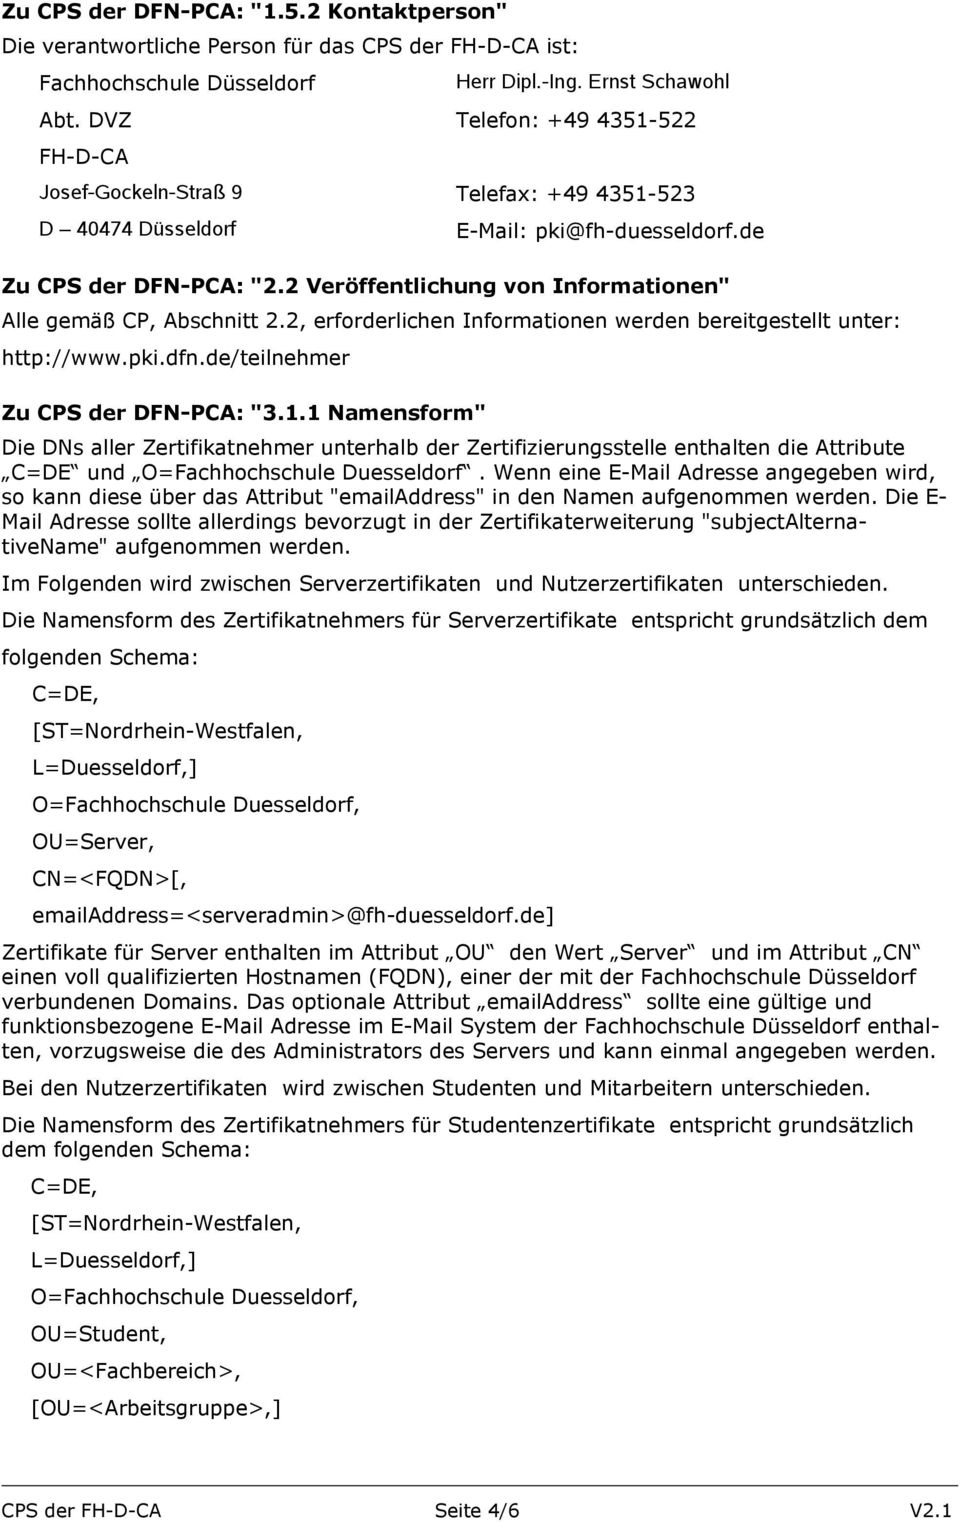 2 Veröffentlichung von Informationen" Alle gemäß CP, Abschnitt 2.2, erforderlichen Informationen werden bereitgestellt unter: http://www.pki.dfn.de/teilnehmer Zu CPS der DFN-PCA: "3.1.